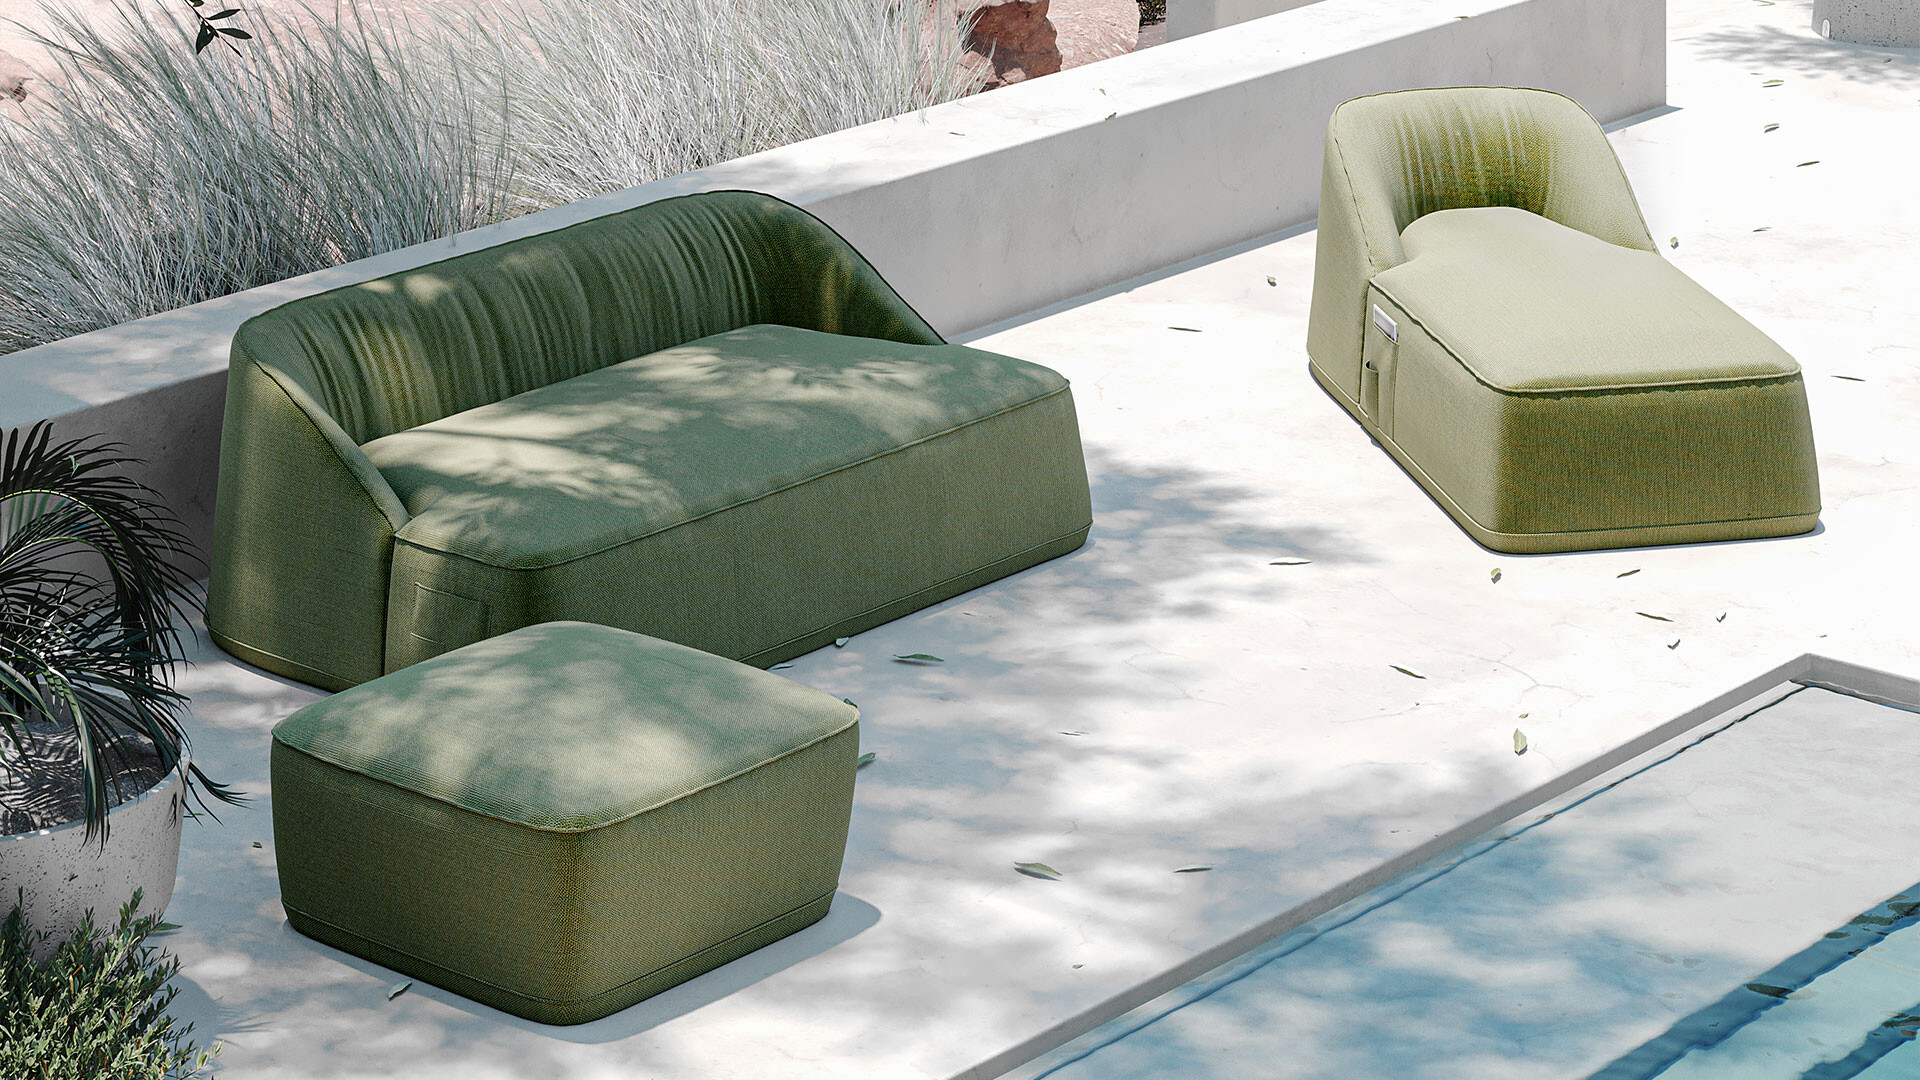 flow-series-outdoor-furniture